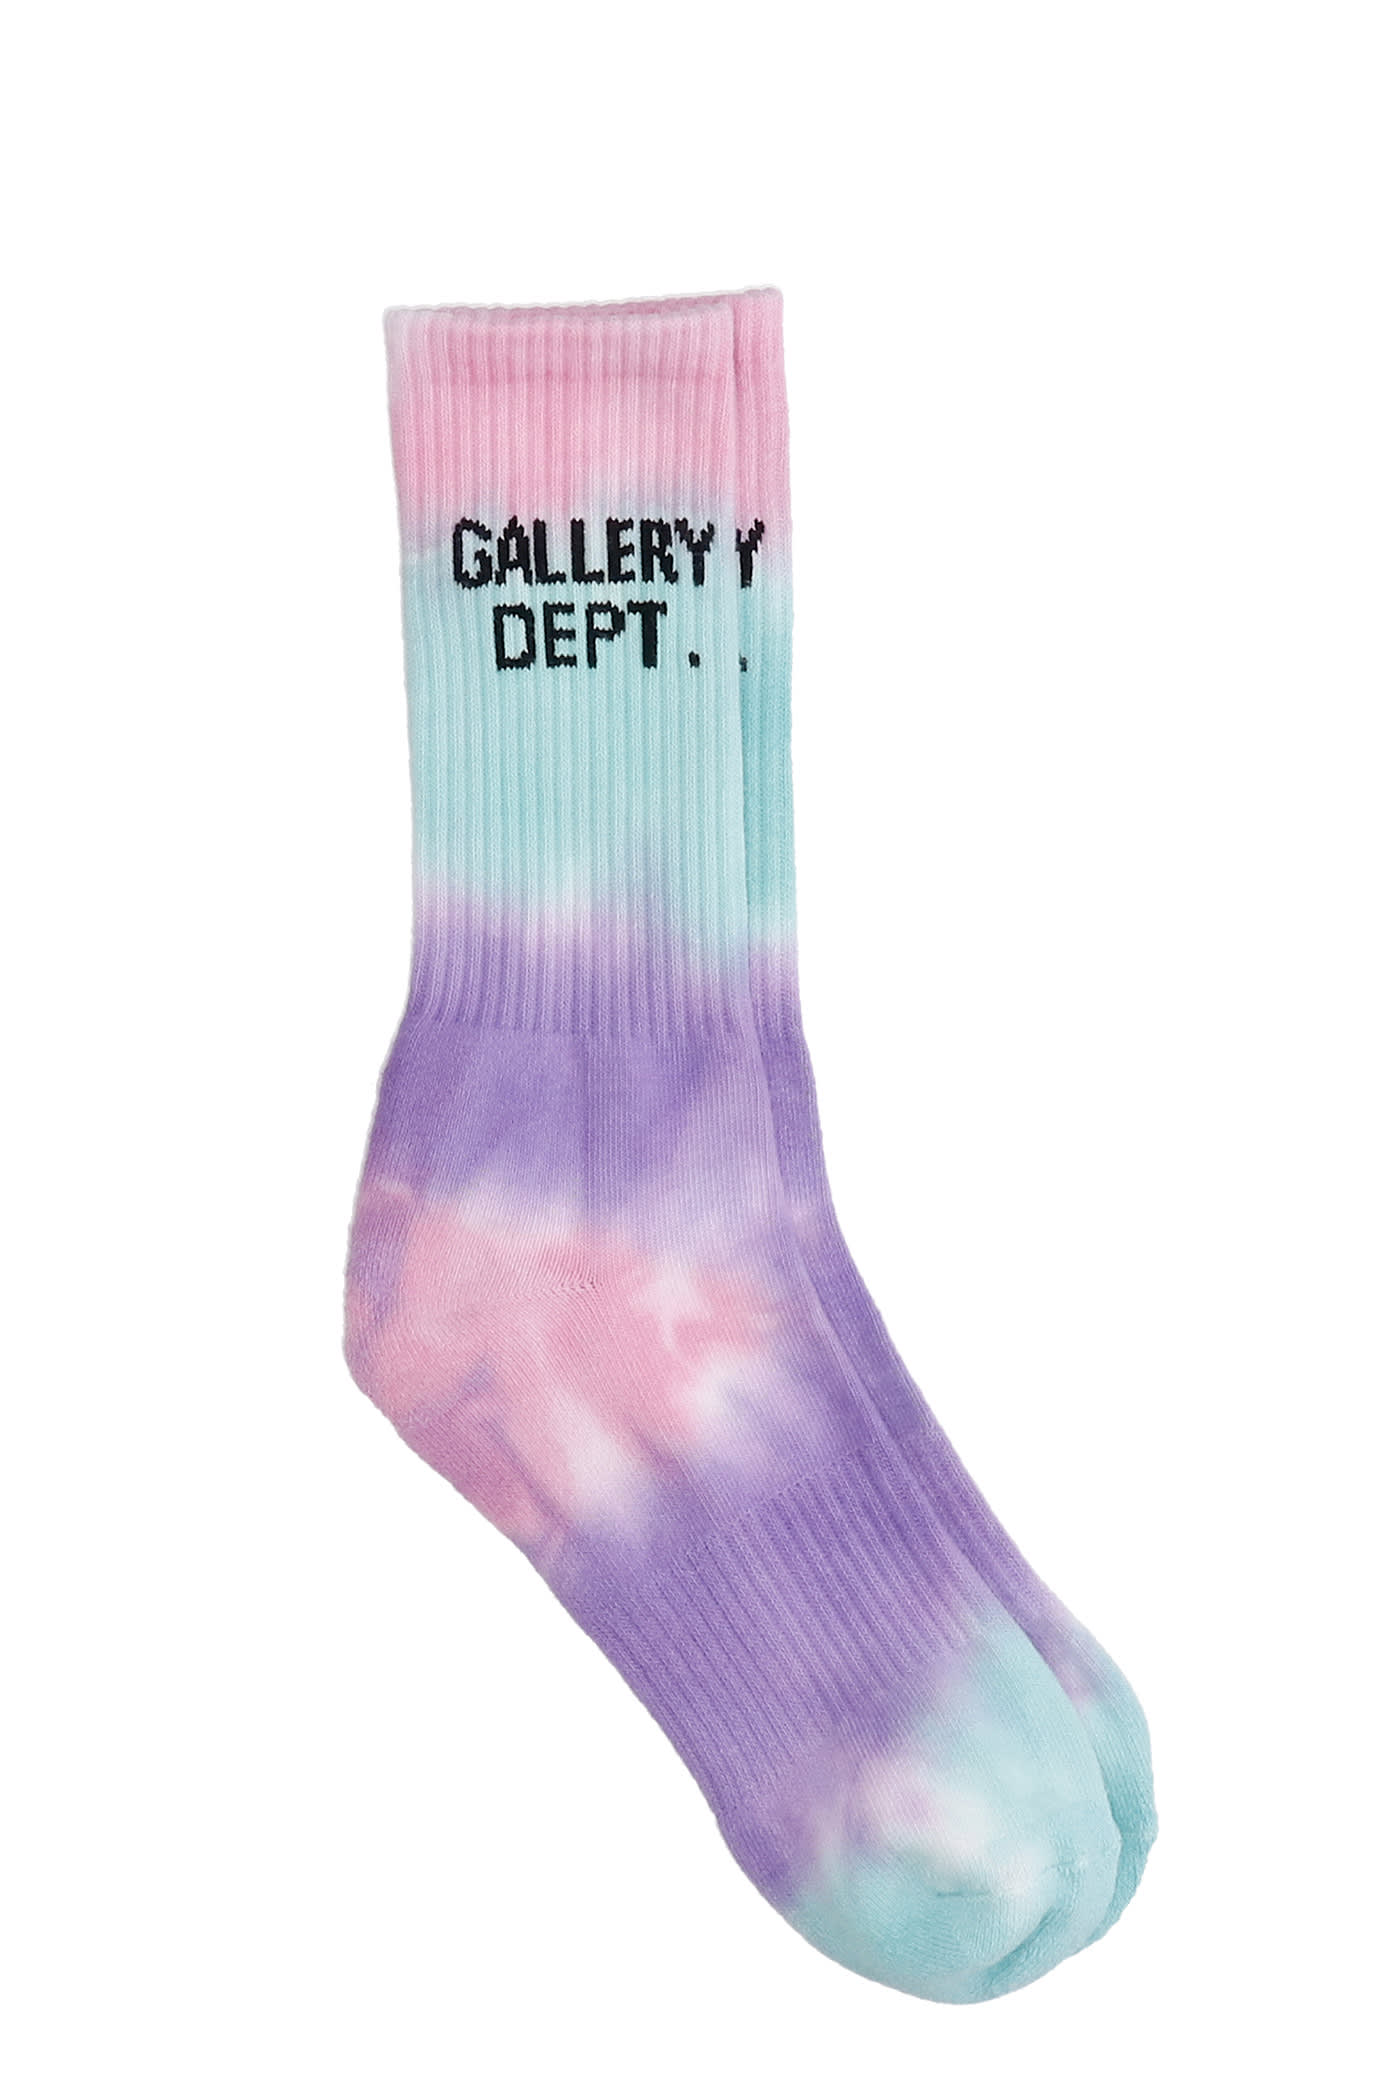 Gallery Dept. Socks In Multicolor Cotton